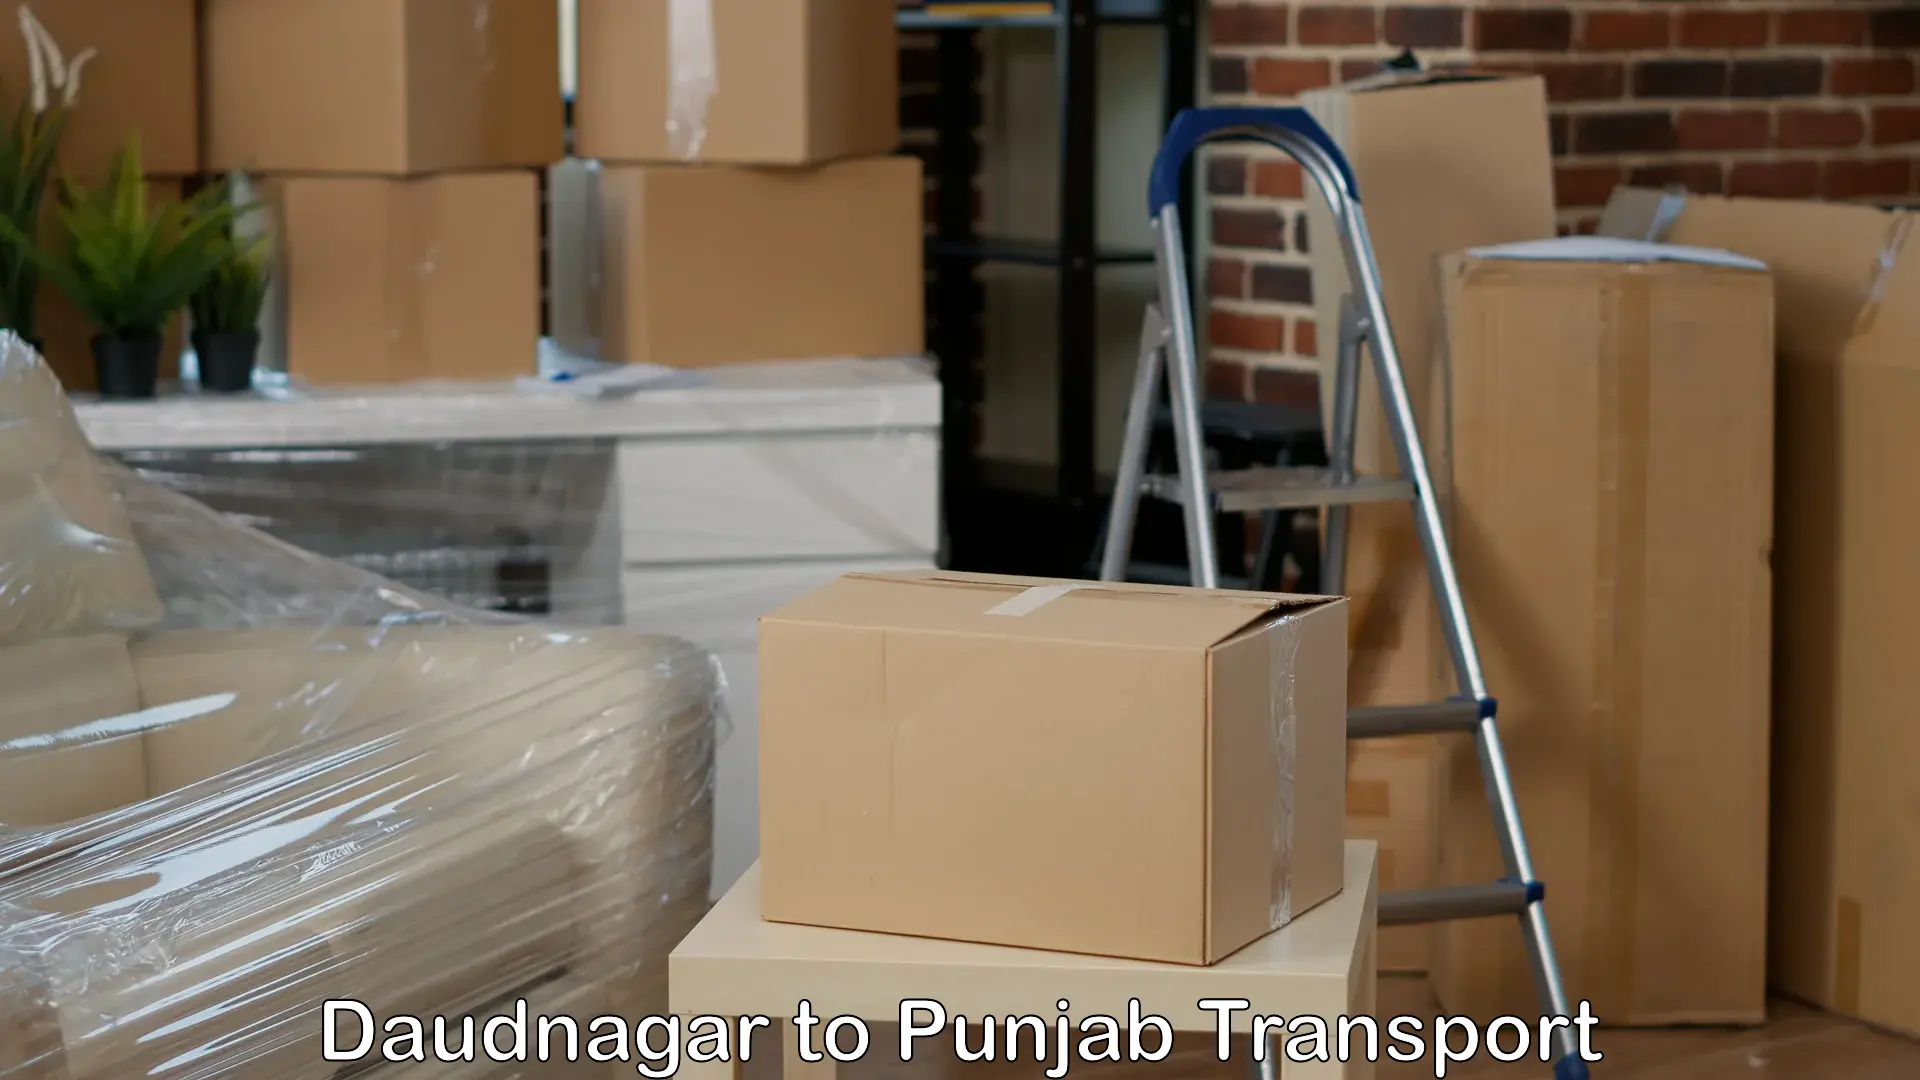 India truck logistics services Daudnagar to Beas